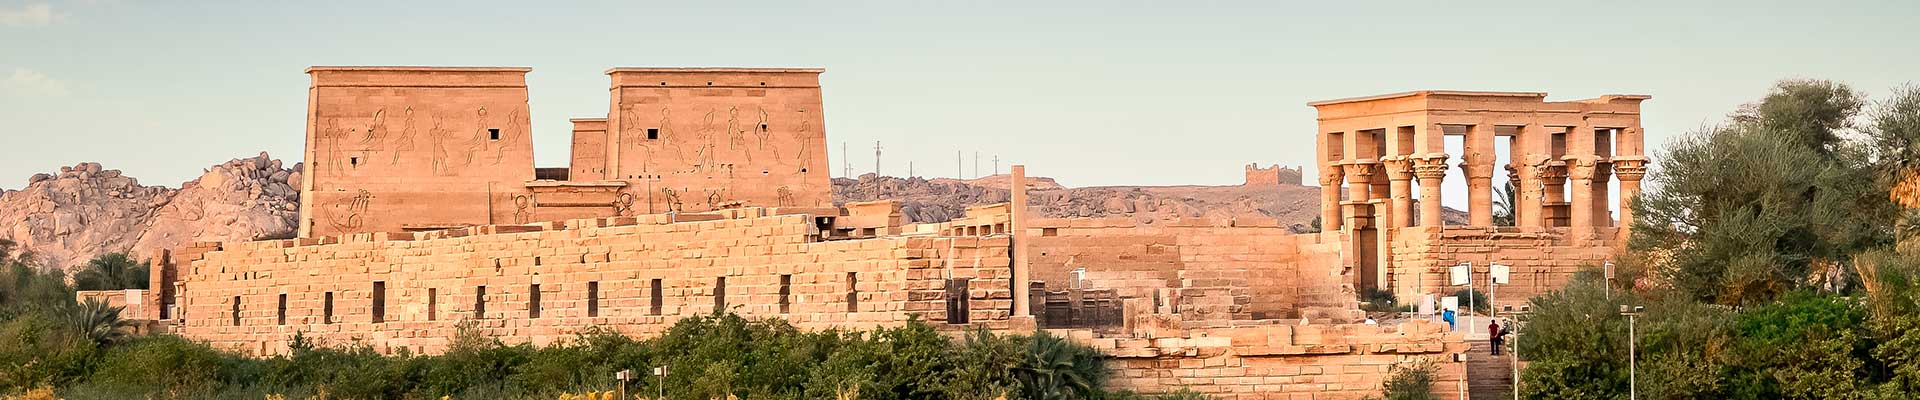 Il Cairo, Assuan e la crociera sul Nilo - Viaggi di Gruppo ...